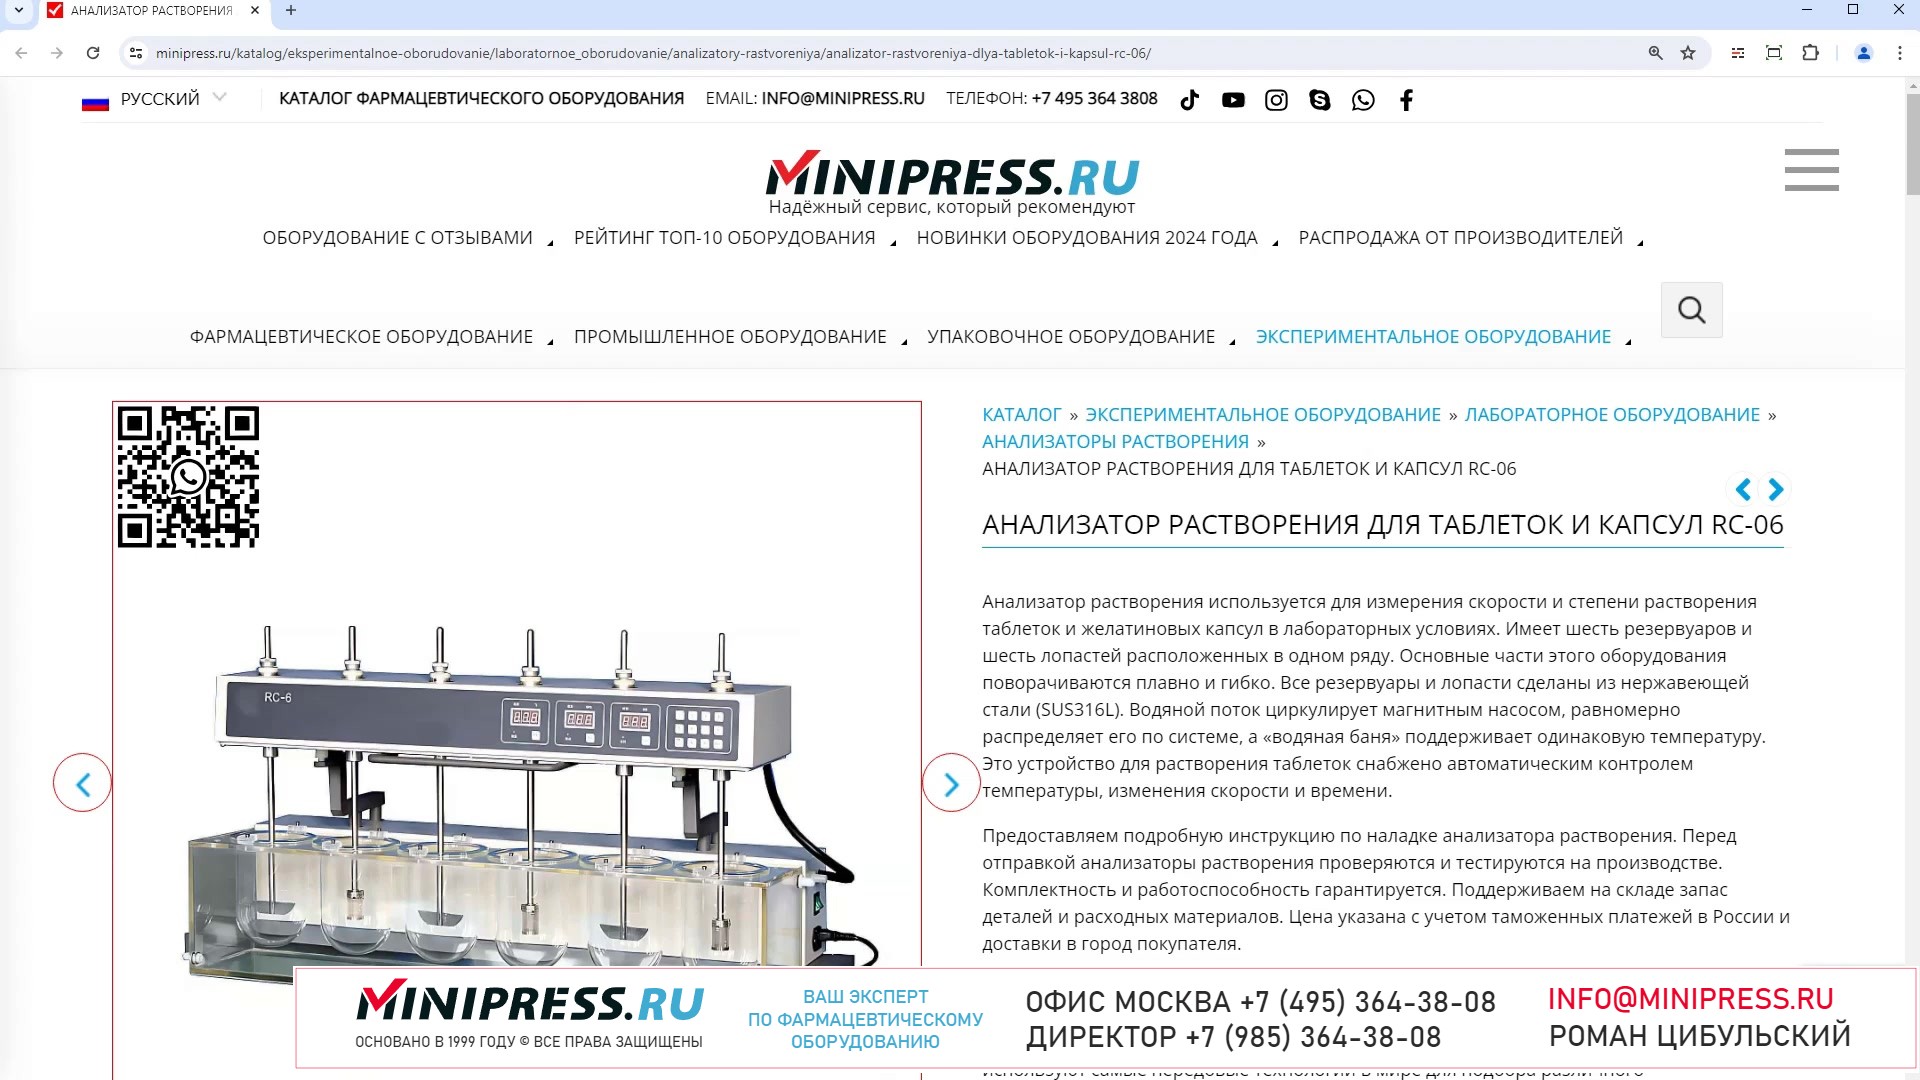 Minipress.ru Анализатор растворения для таблеток и капсул RC-06